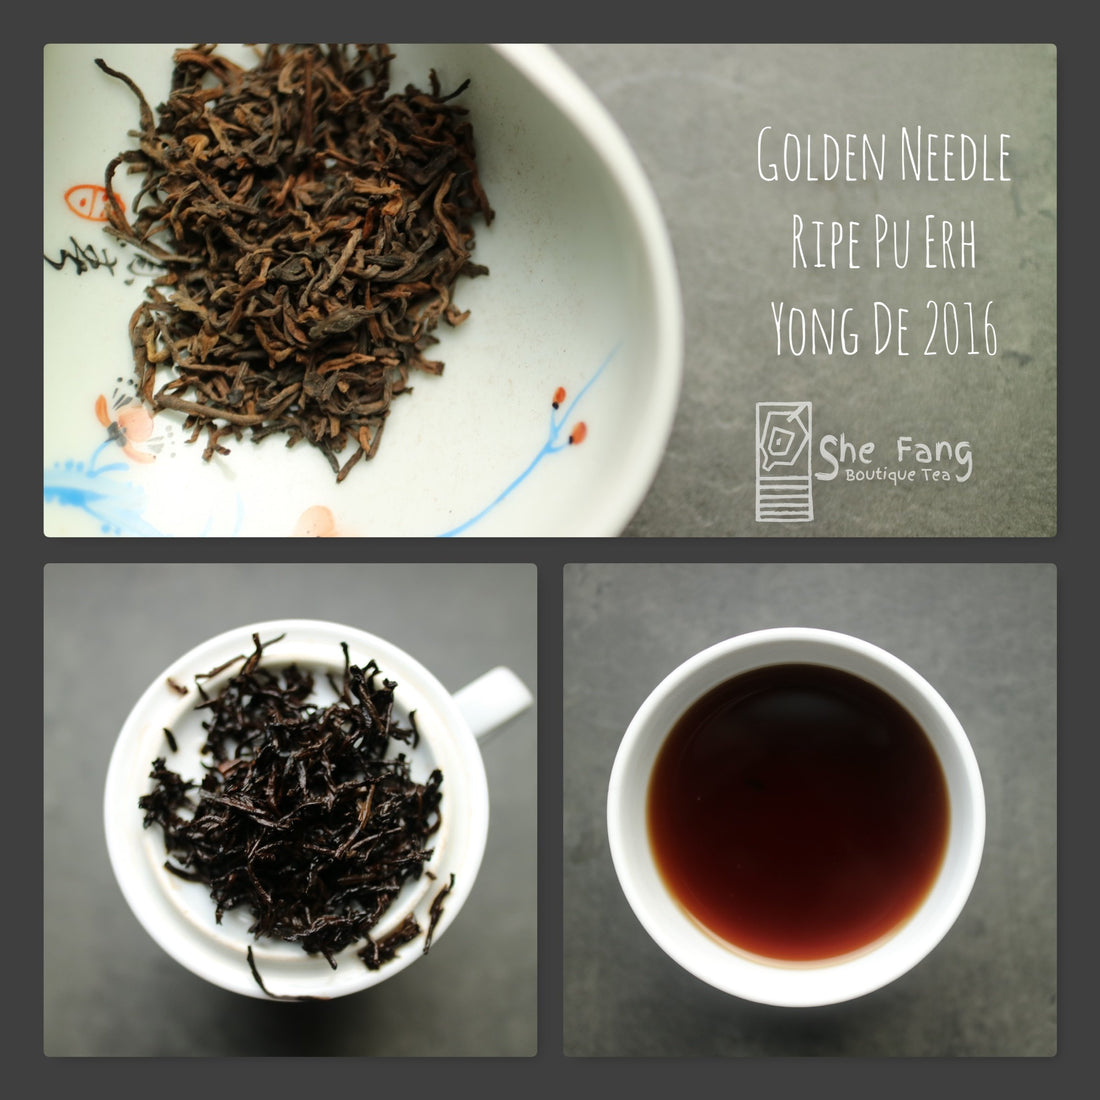 Tea Sourcing – batch N.240 Pu Erh Teas – Golden Needle Ripe Pu-Erh Yong De 2016 - She Fang Boutique Tea